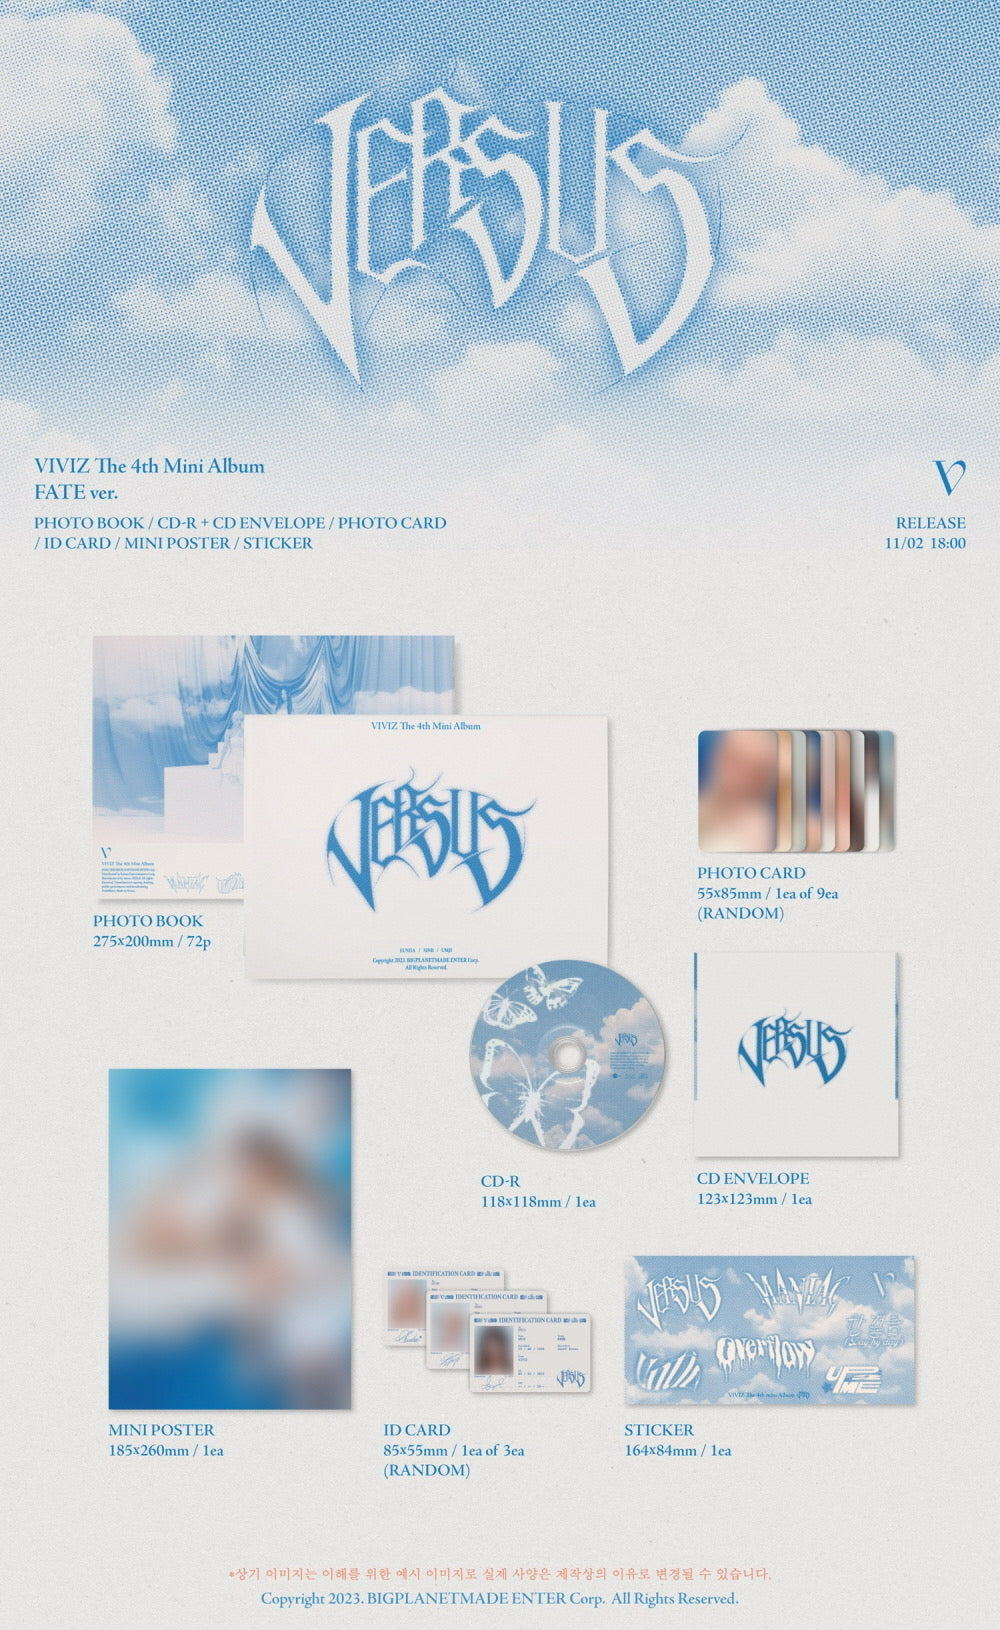 VIVIZ - 4th Mini-Album 'VERSUS' (Photobook Version)